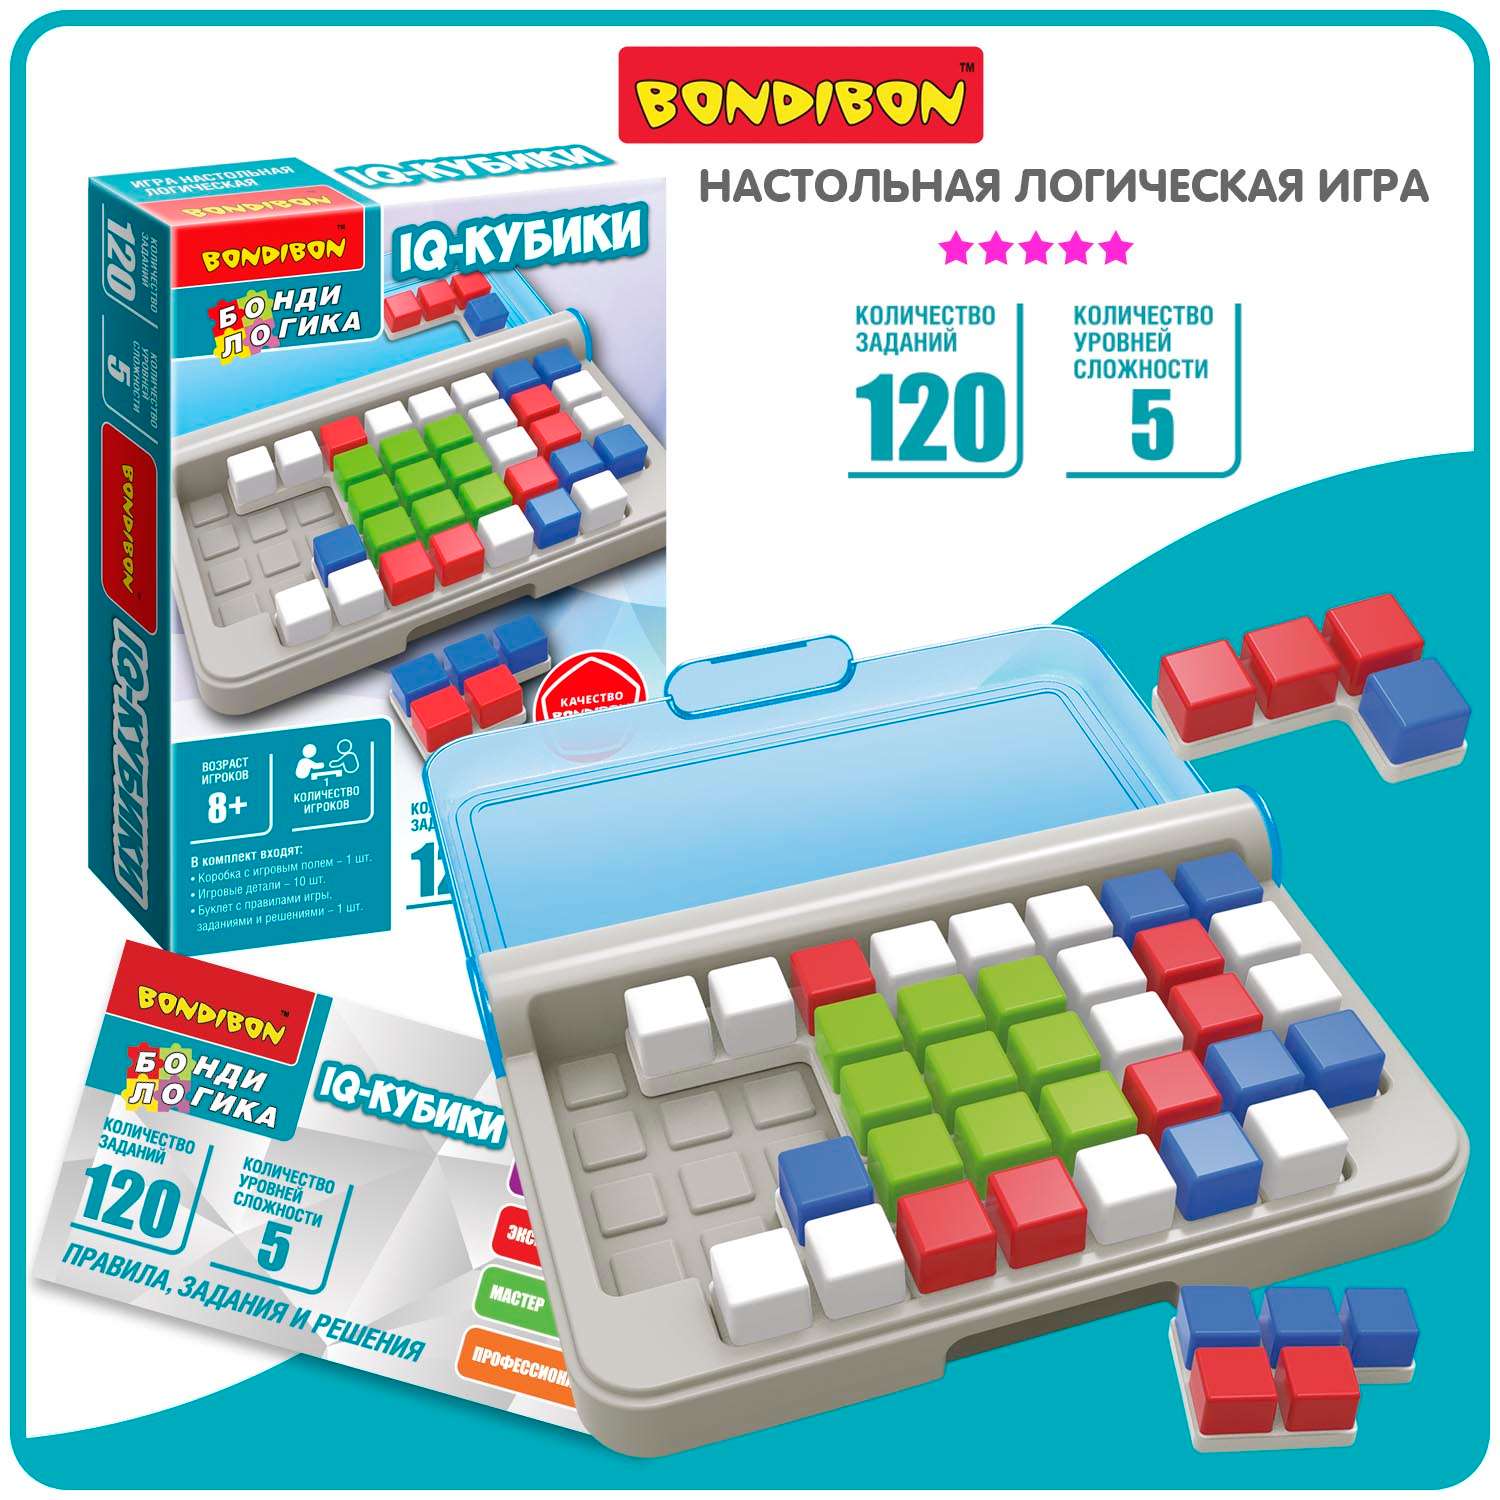 Настольная логическая игра BONDIBON карманная головоломка IQ-Кубики серия БондиЛогика - фото 1